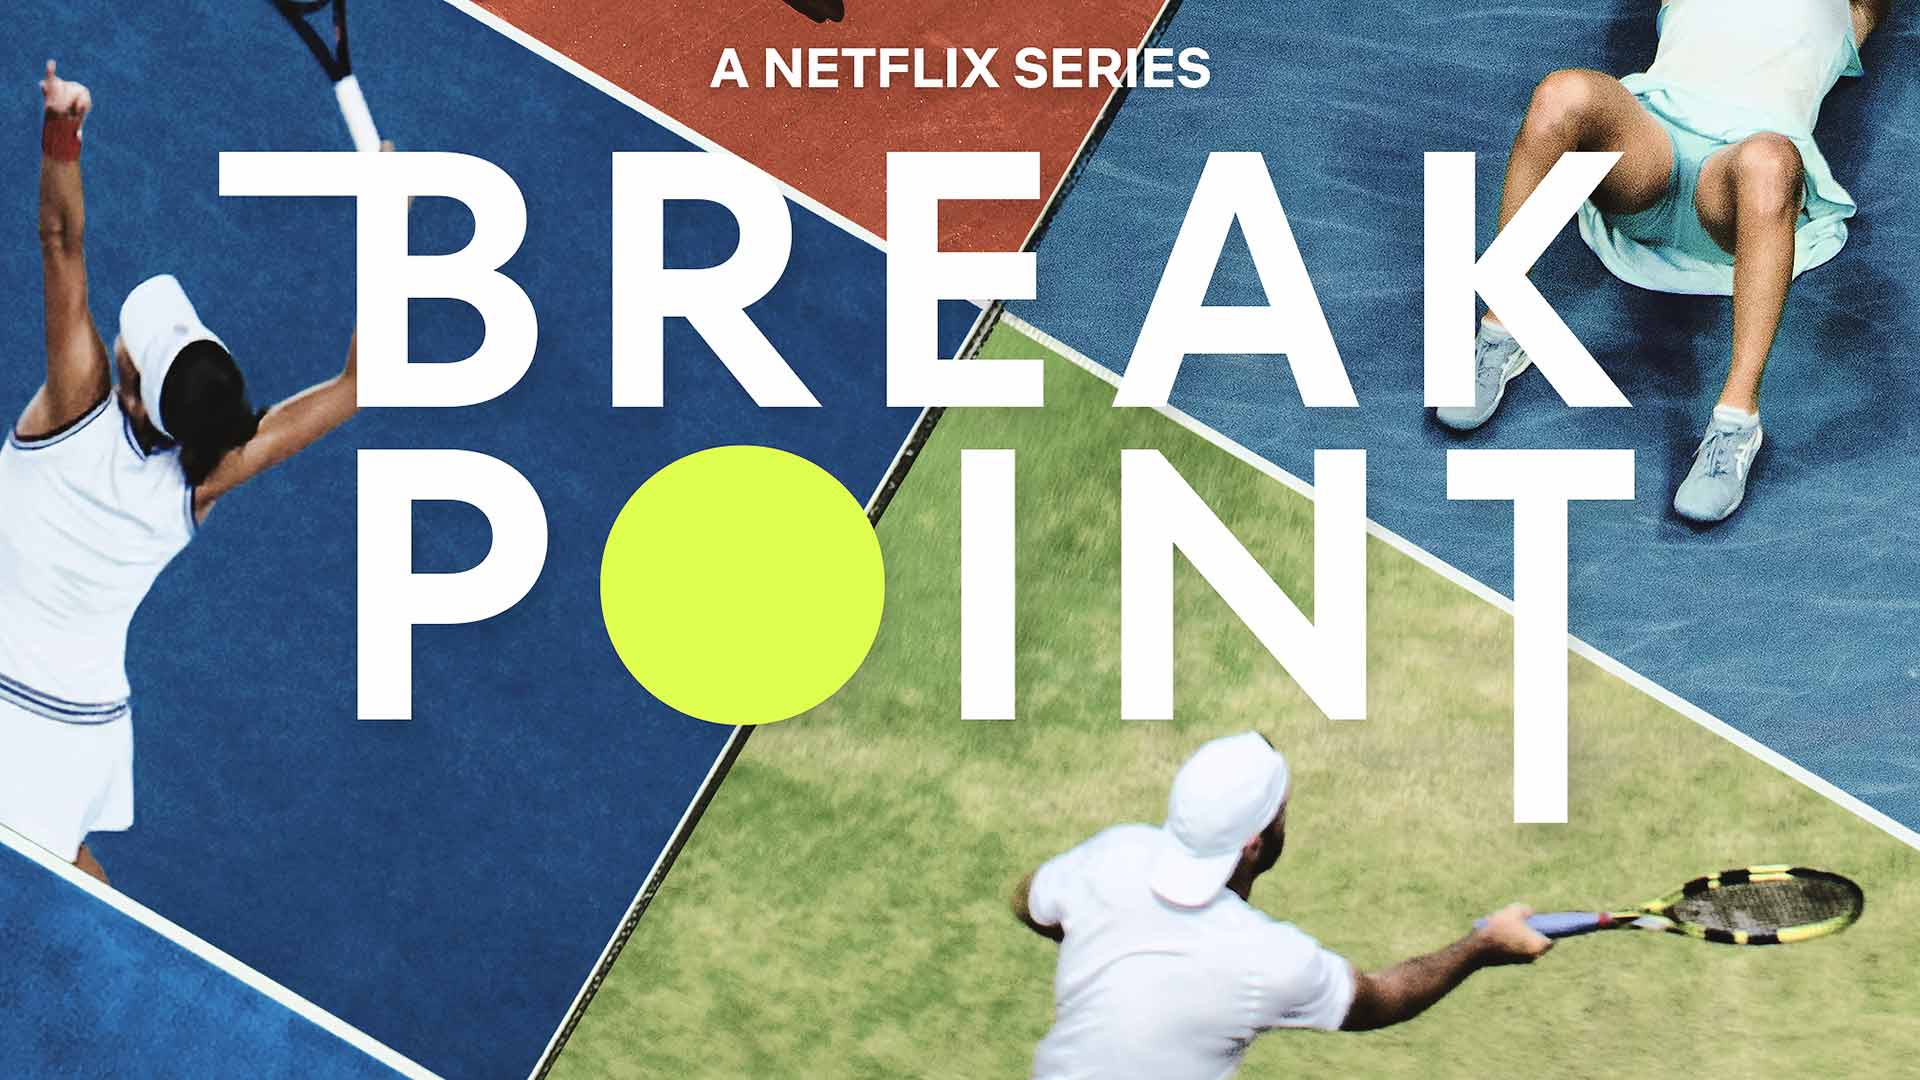 Break Point will premiere on 13 January.